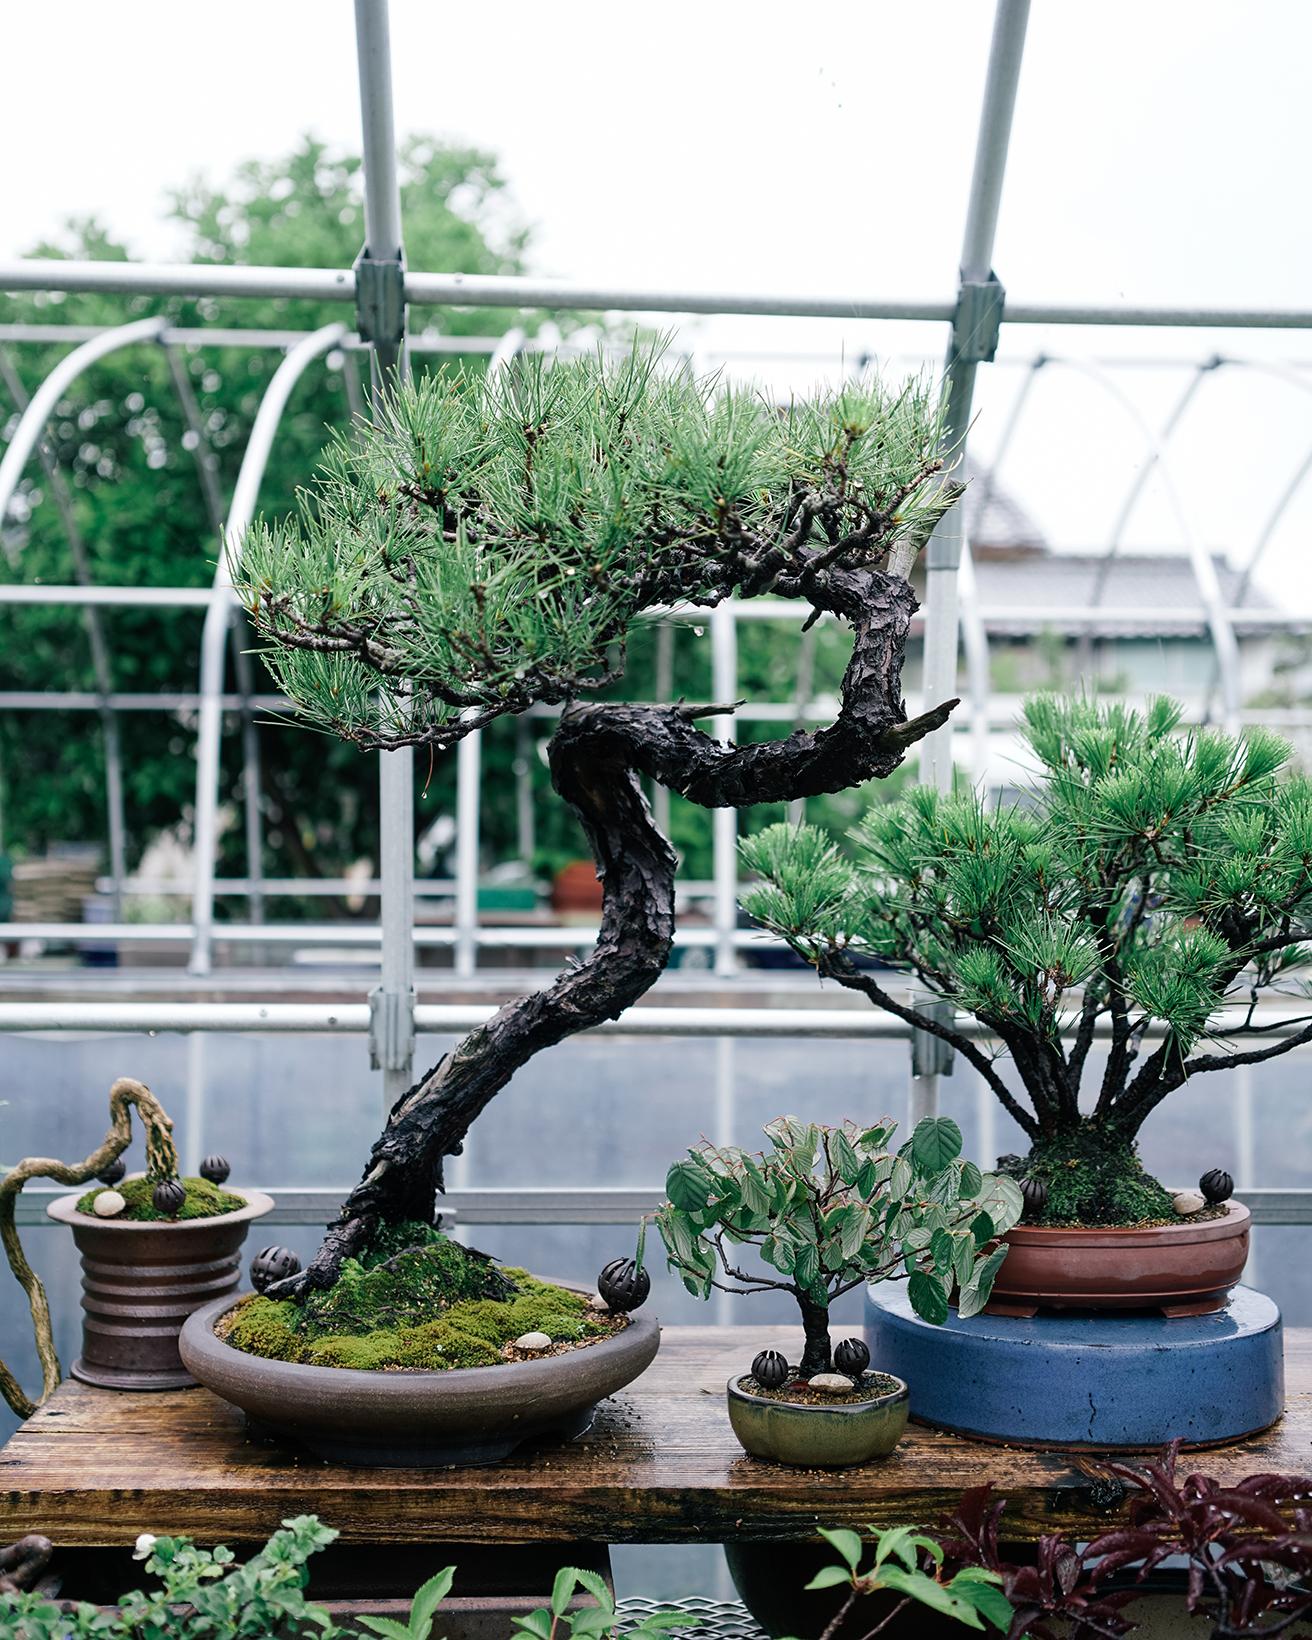 〈塩津植物研究所〉は奈良・橿原に位置する。現代のライフスタイルに寄り添うハイセンスな盆栽が手に入ると、全国から多くの人が訪れる。